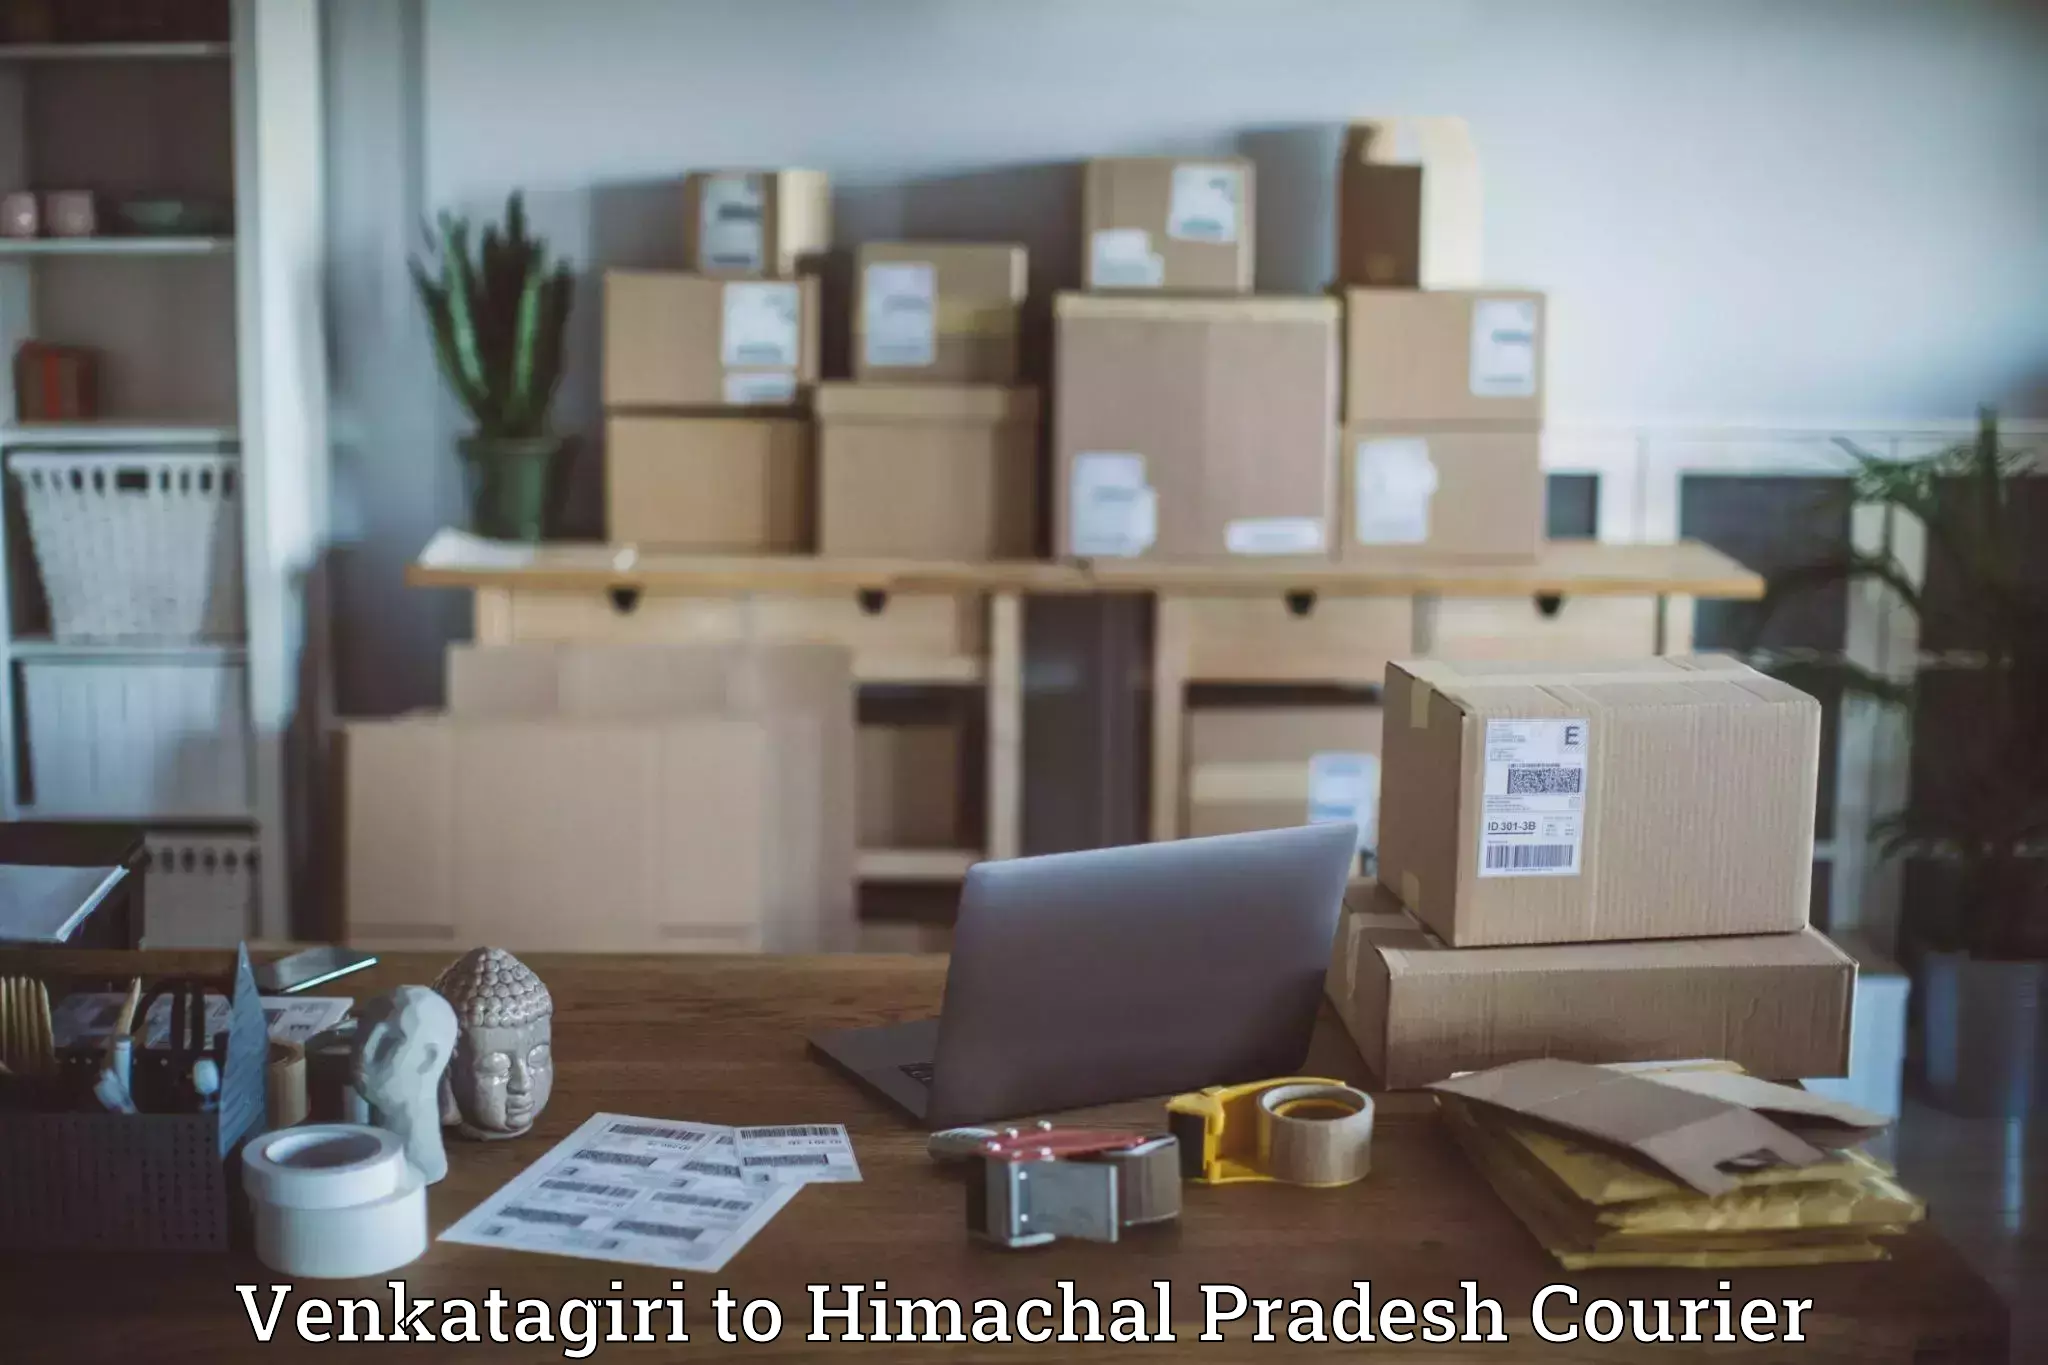 High-capacity parcel service Venkatagiri to Rajgarh Sirmaur